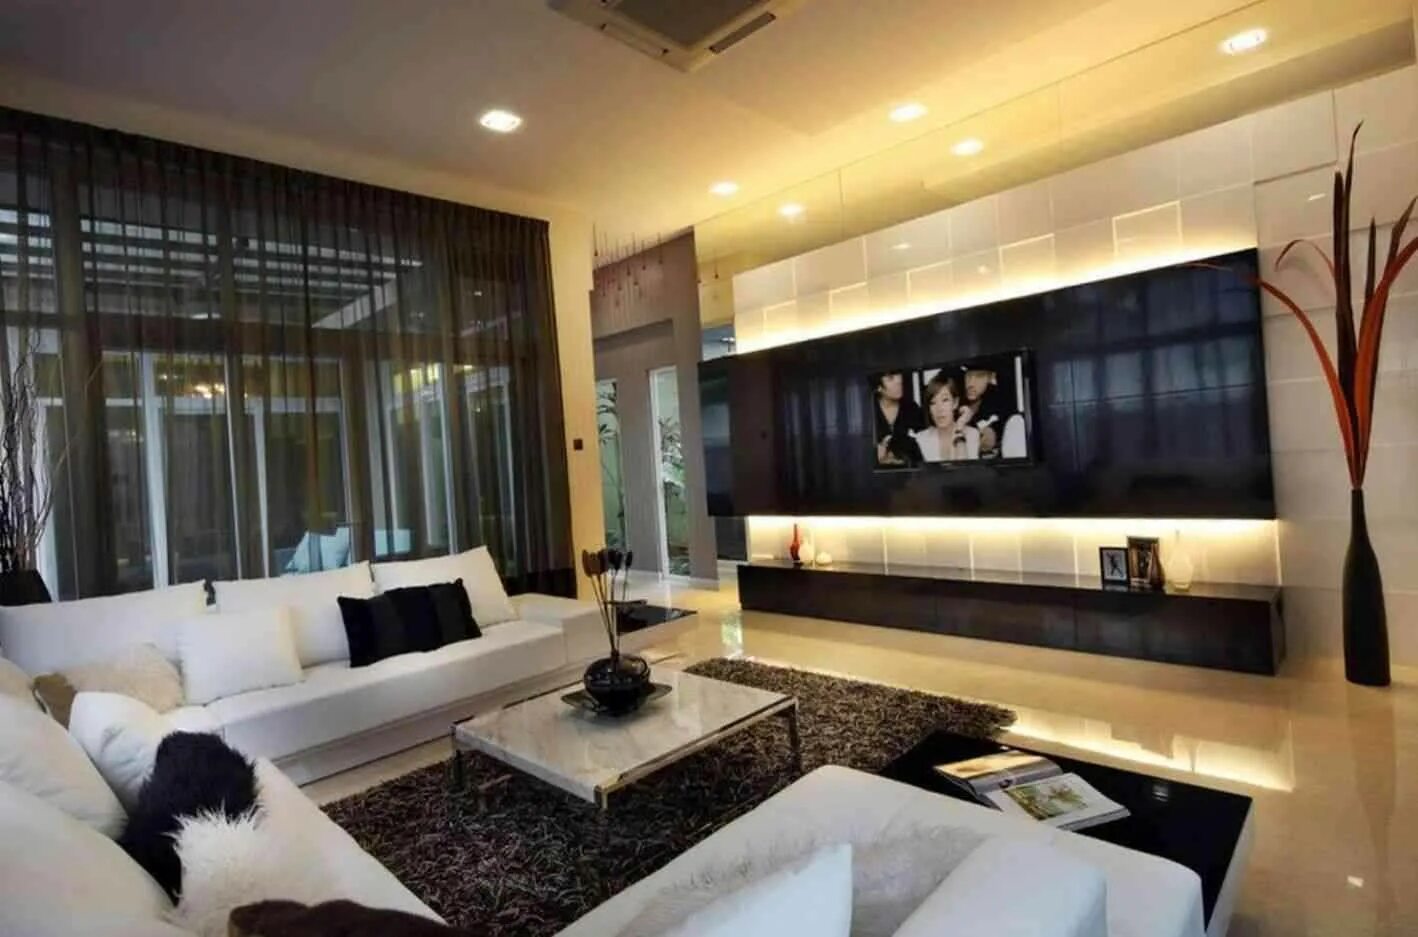 Телевизор в интерьере гостиной. Телевизор в гостиной дизайн. Стены с телевизором в современном интерьере. Телевизор на стекле в гостиной. Дизайн стены с телевизором в гостиной.